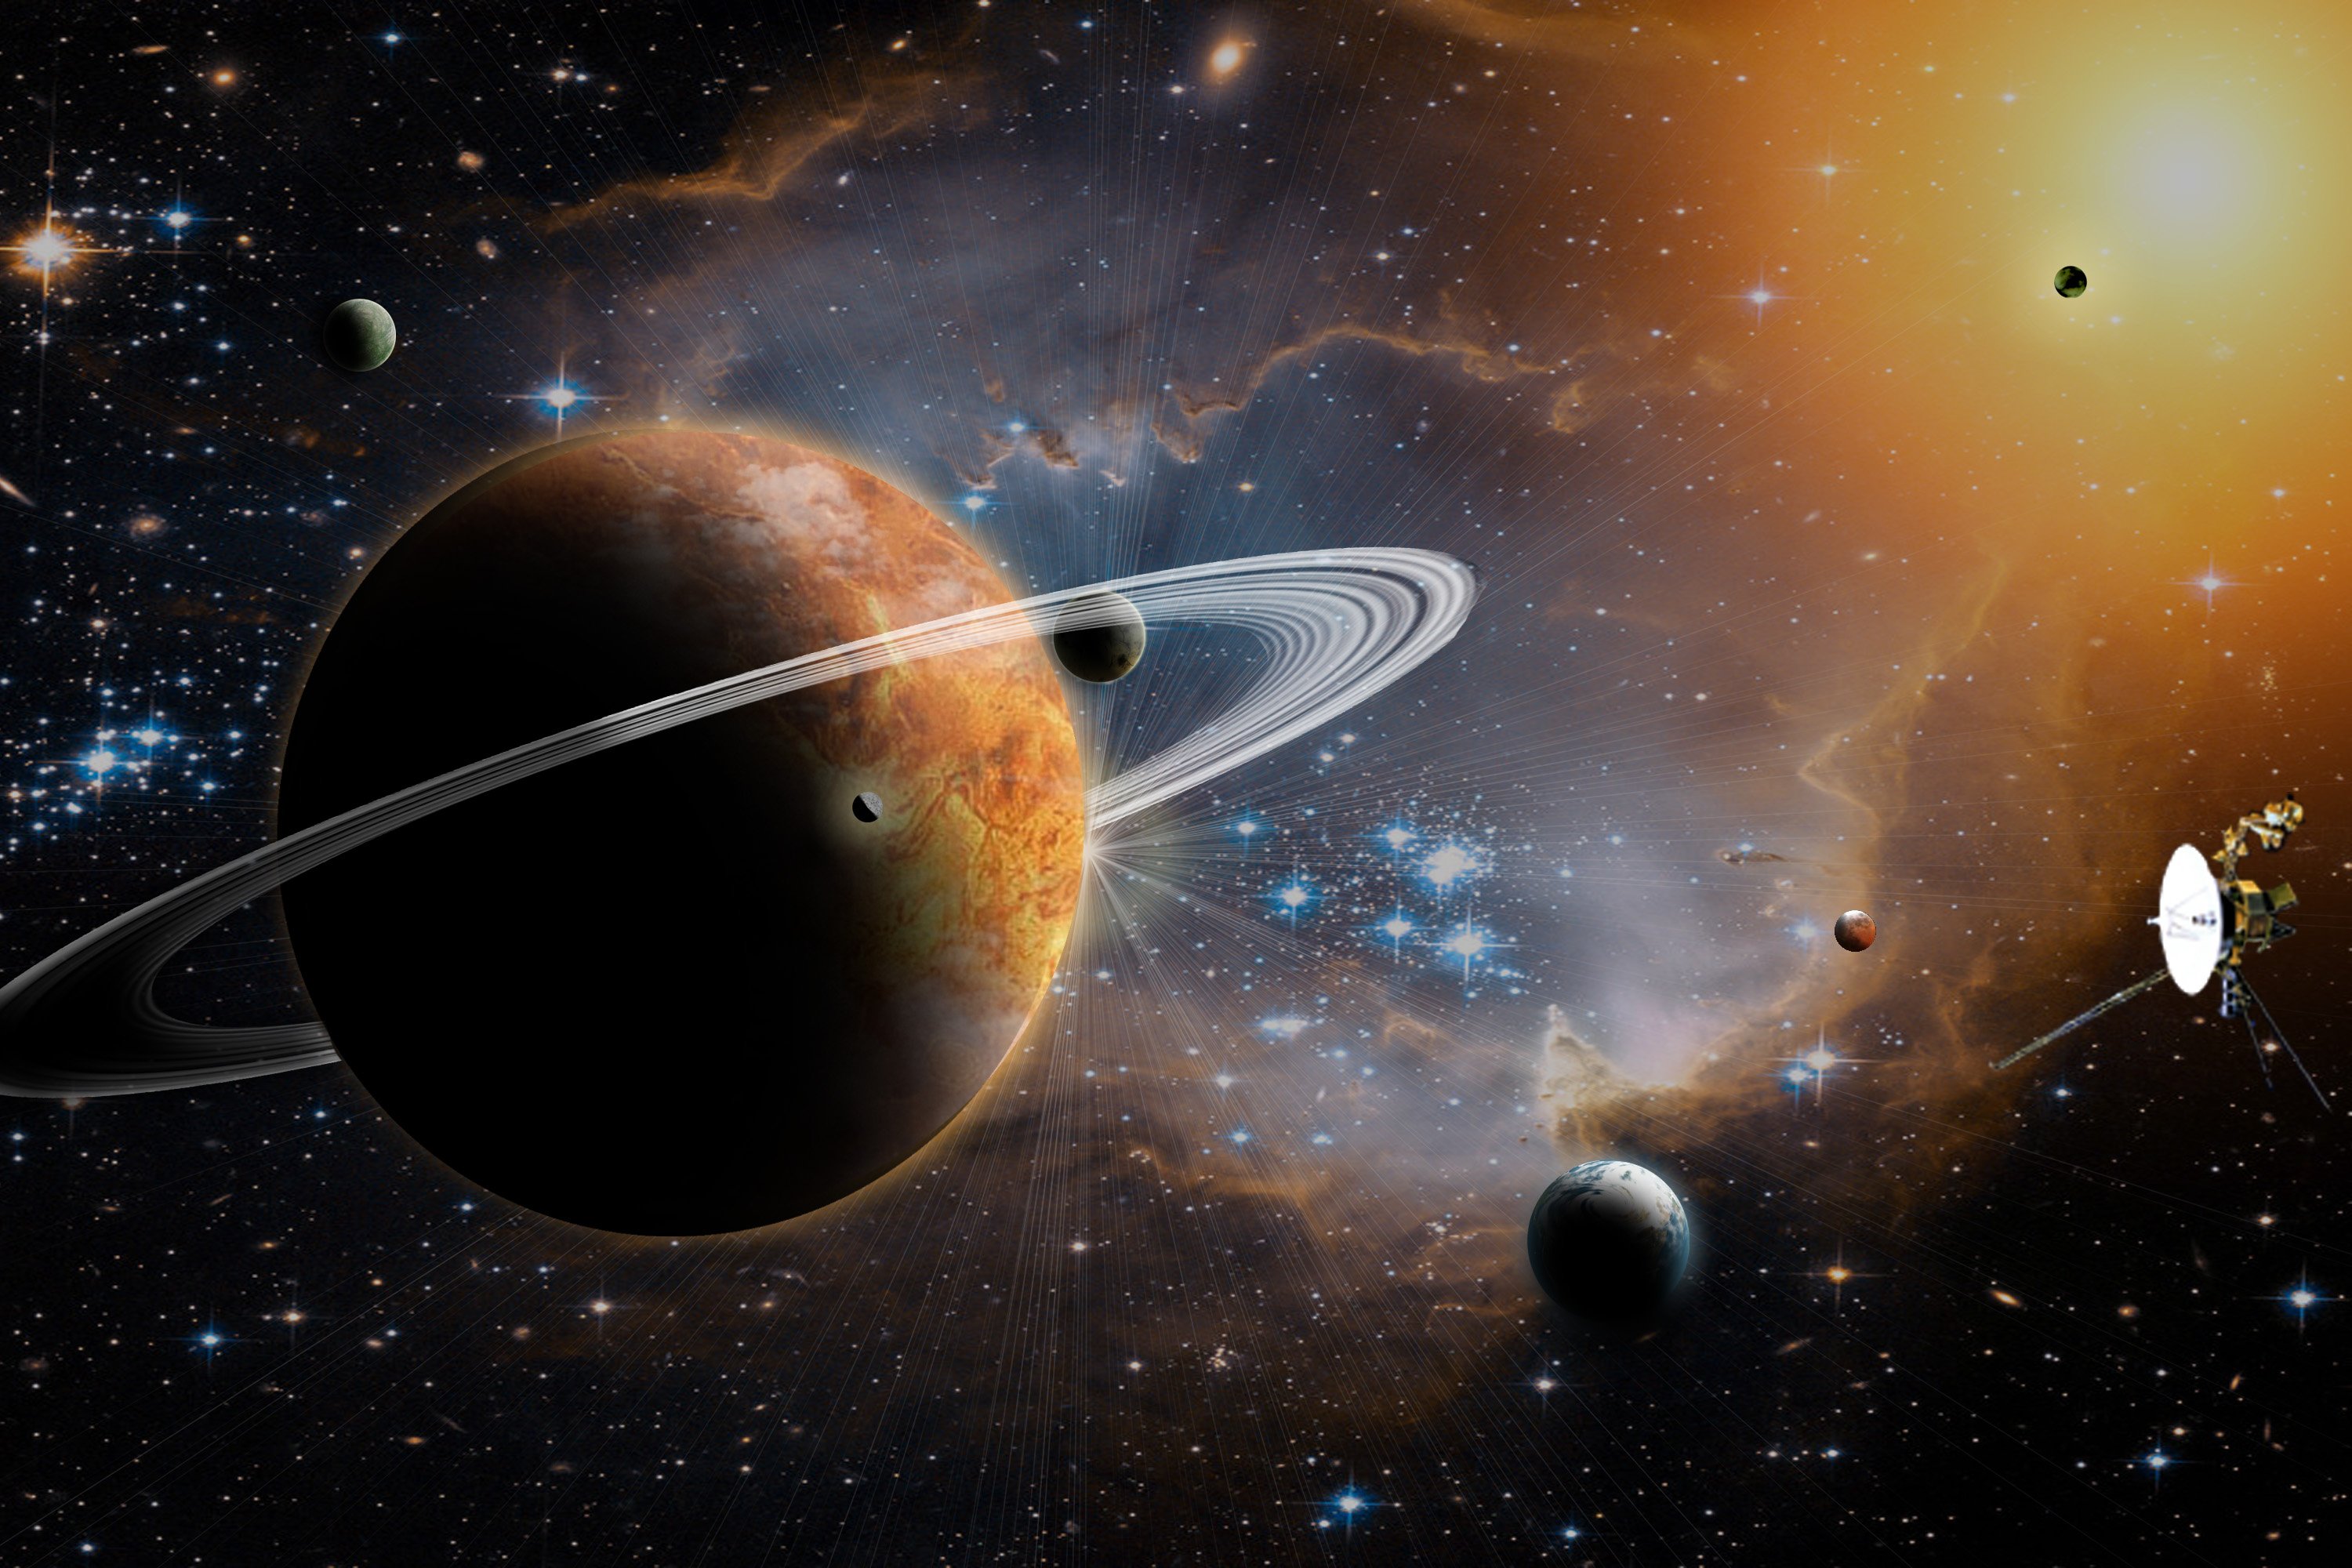 Planet. Космос планеты. Планета с кольцами. Изображение космоса и планет. Картинки про космос и планеты.